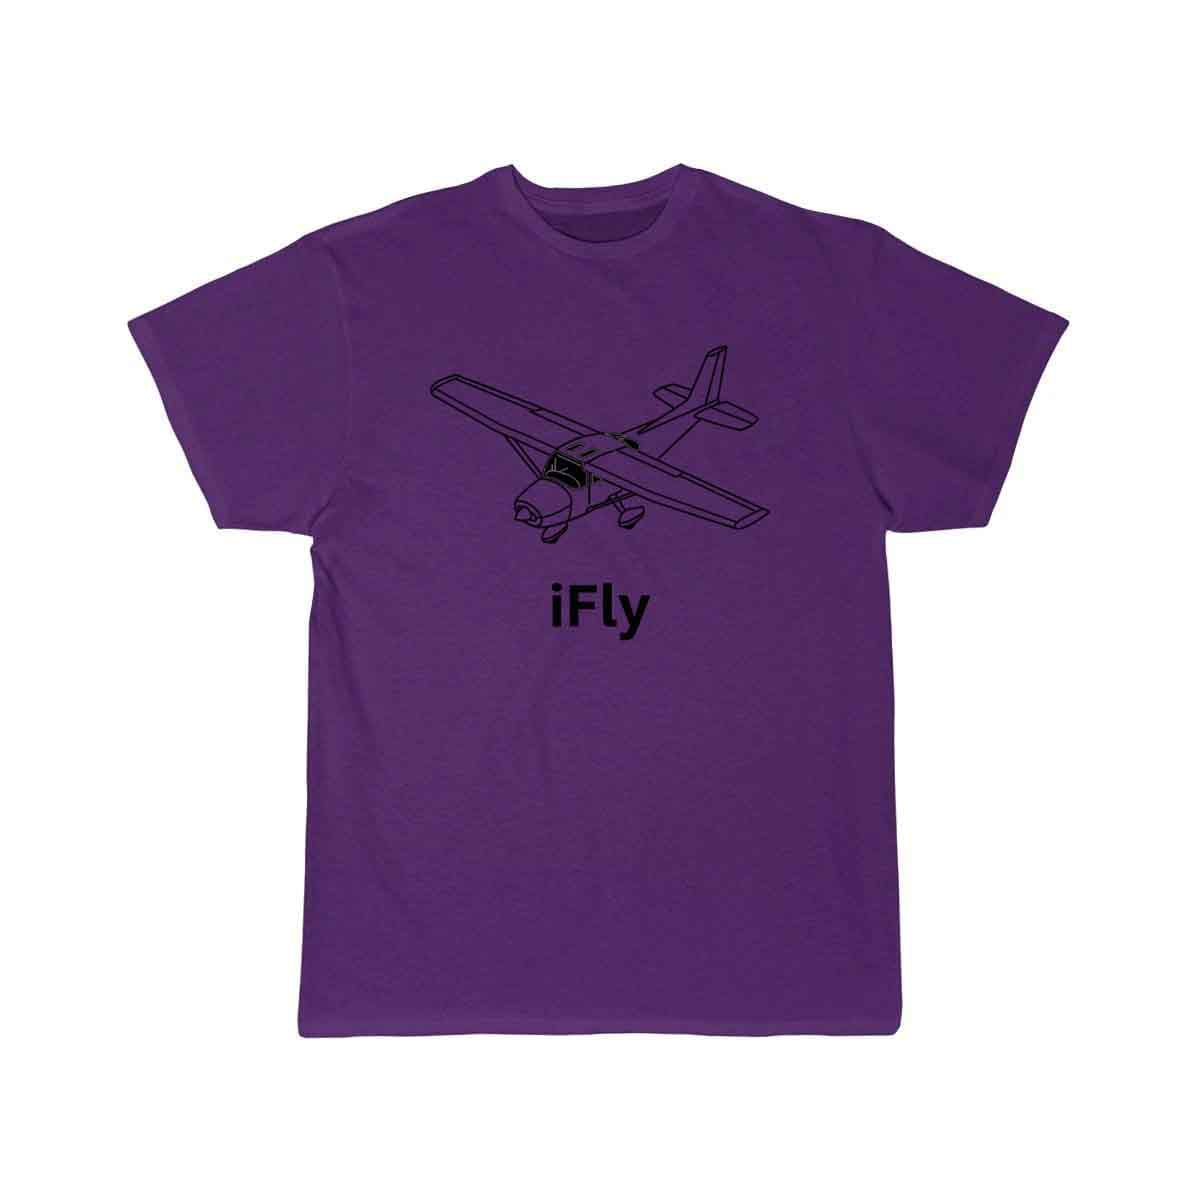 iFly Airplane T SHIRT THE AV8R